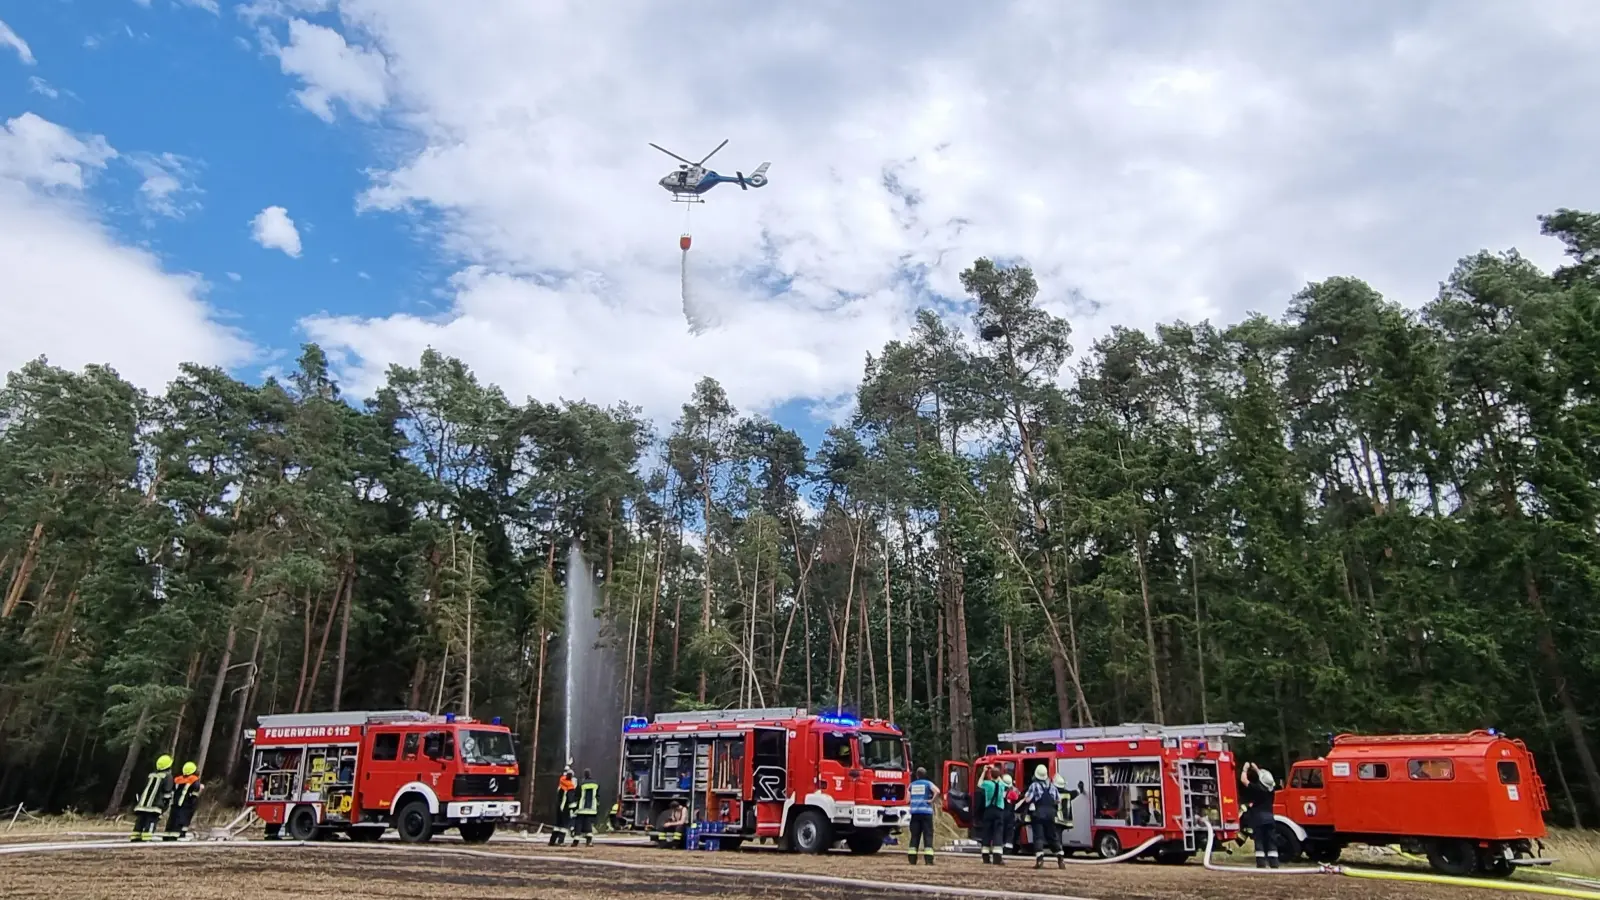 Zum Löschen des Waldbrands bei Kleinsteinach waren zahlreiche Freiwillige Feuerwehren angerückt. Auch vom Hubschrauber aus wurden die Flämmen bekämpft.  (Foto: Feuerwehr/Rainer Weiskirchen)